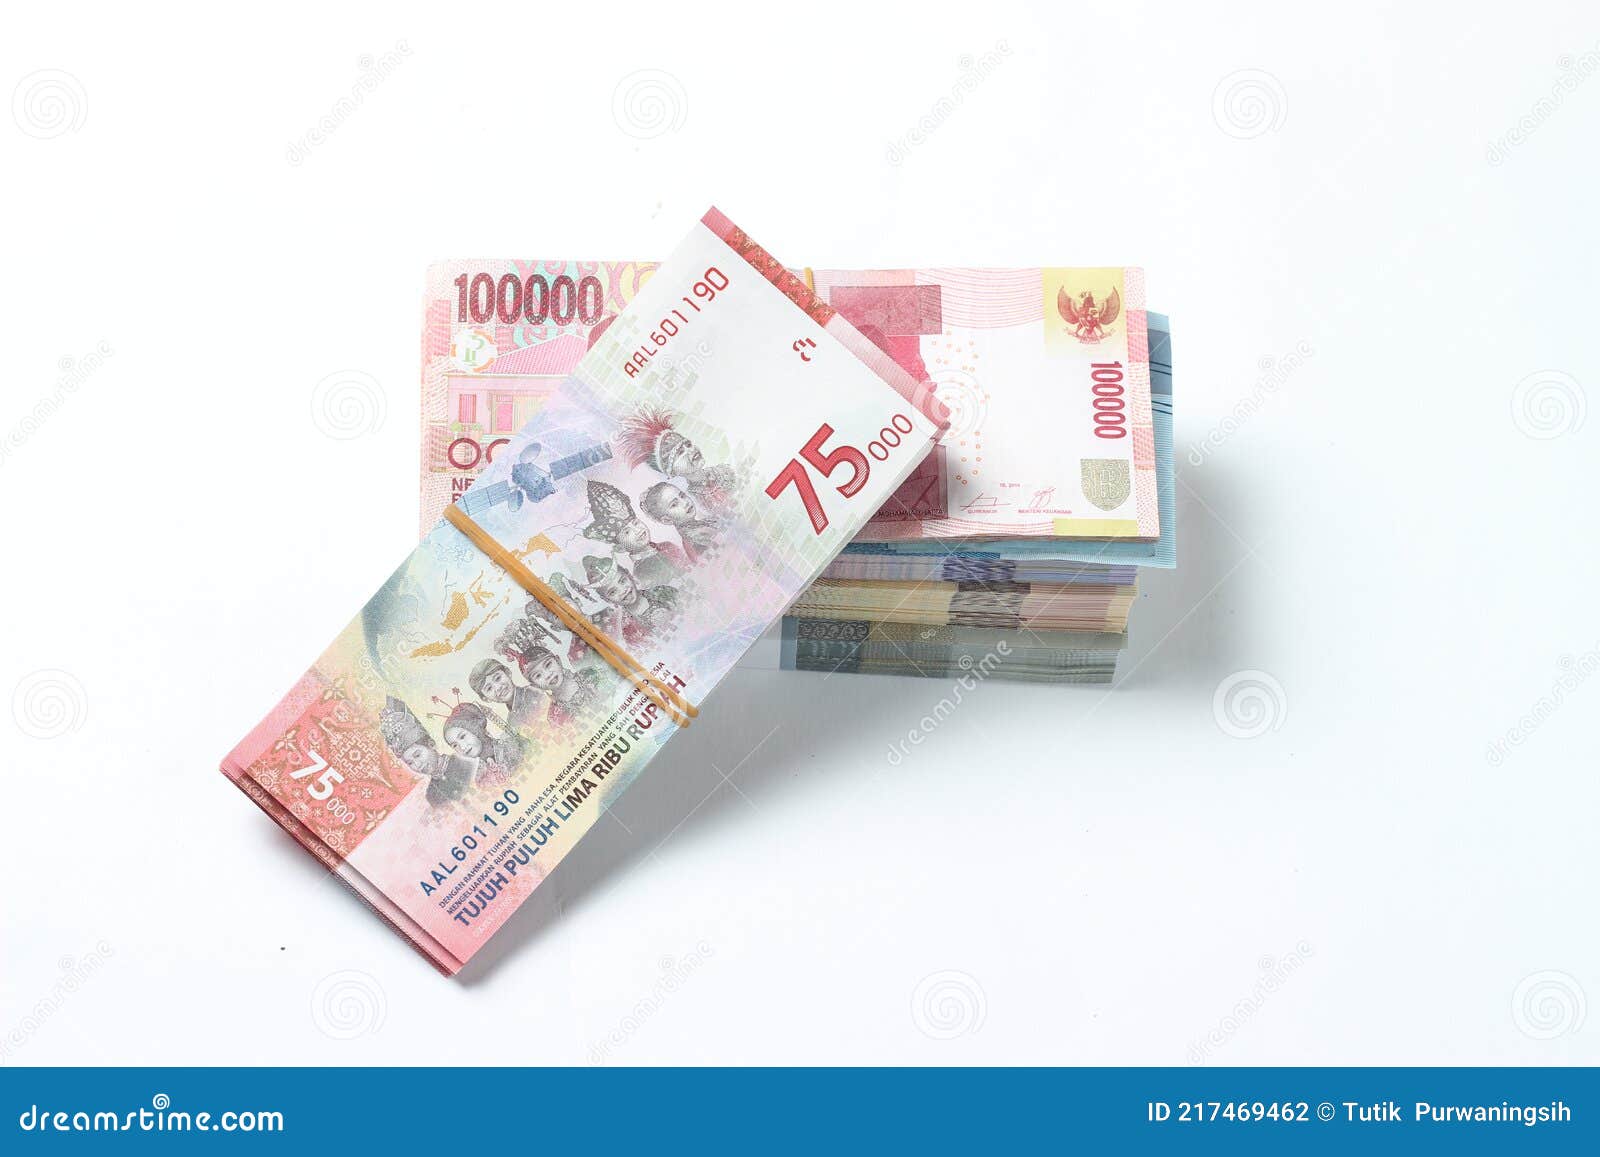 印度尼西亚1960年50卢比纸币-价格:155元-se91885590-外国钱币-零售-7788收藏__收藏热线